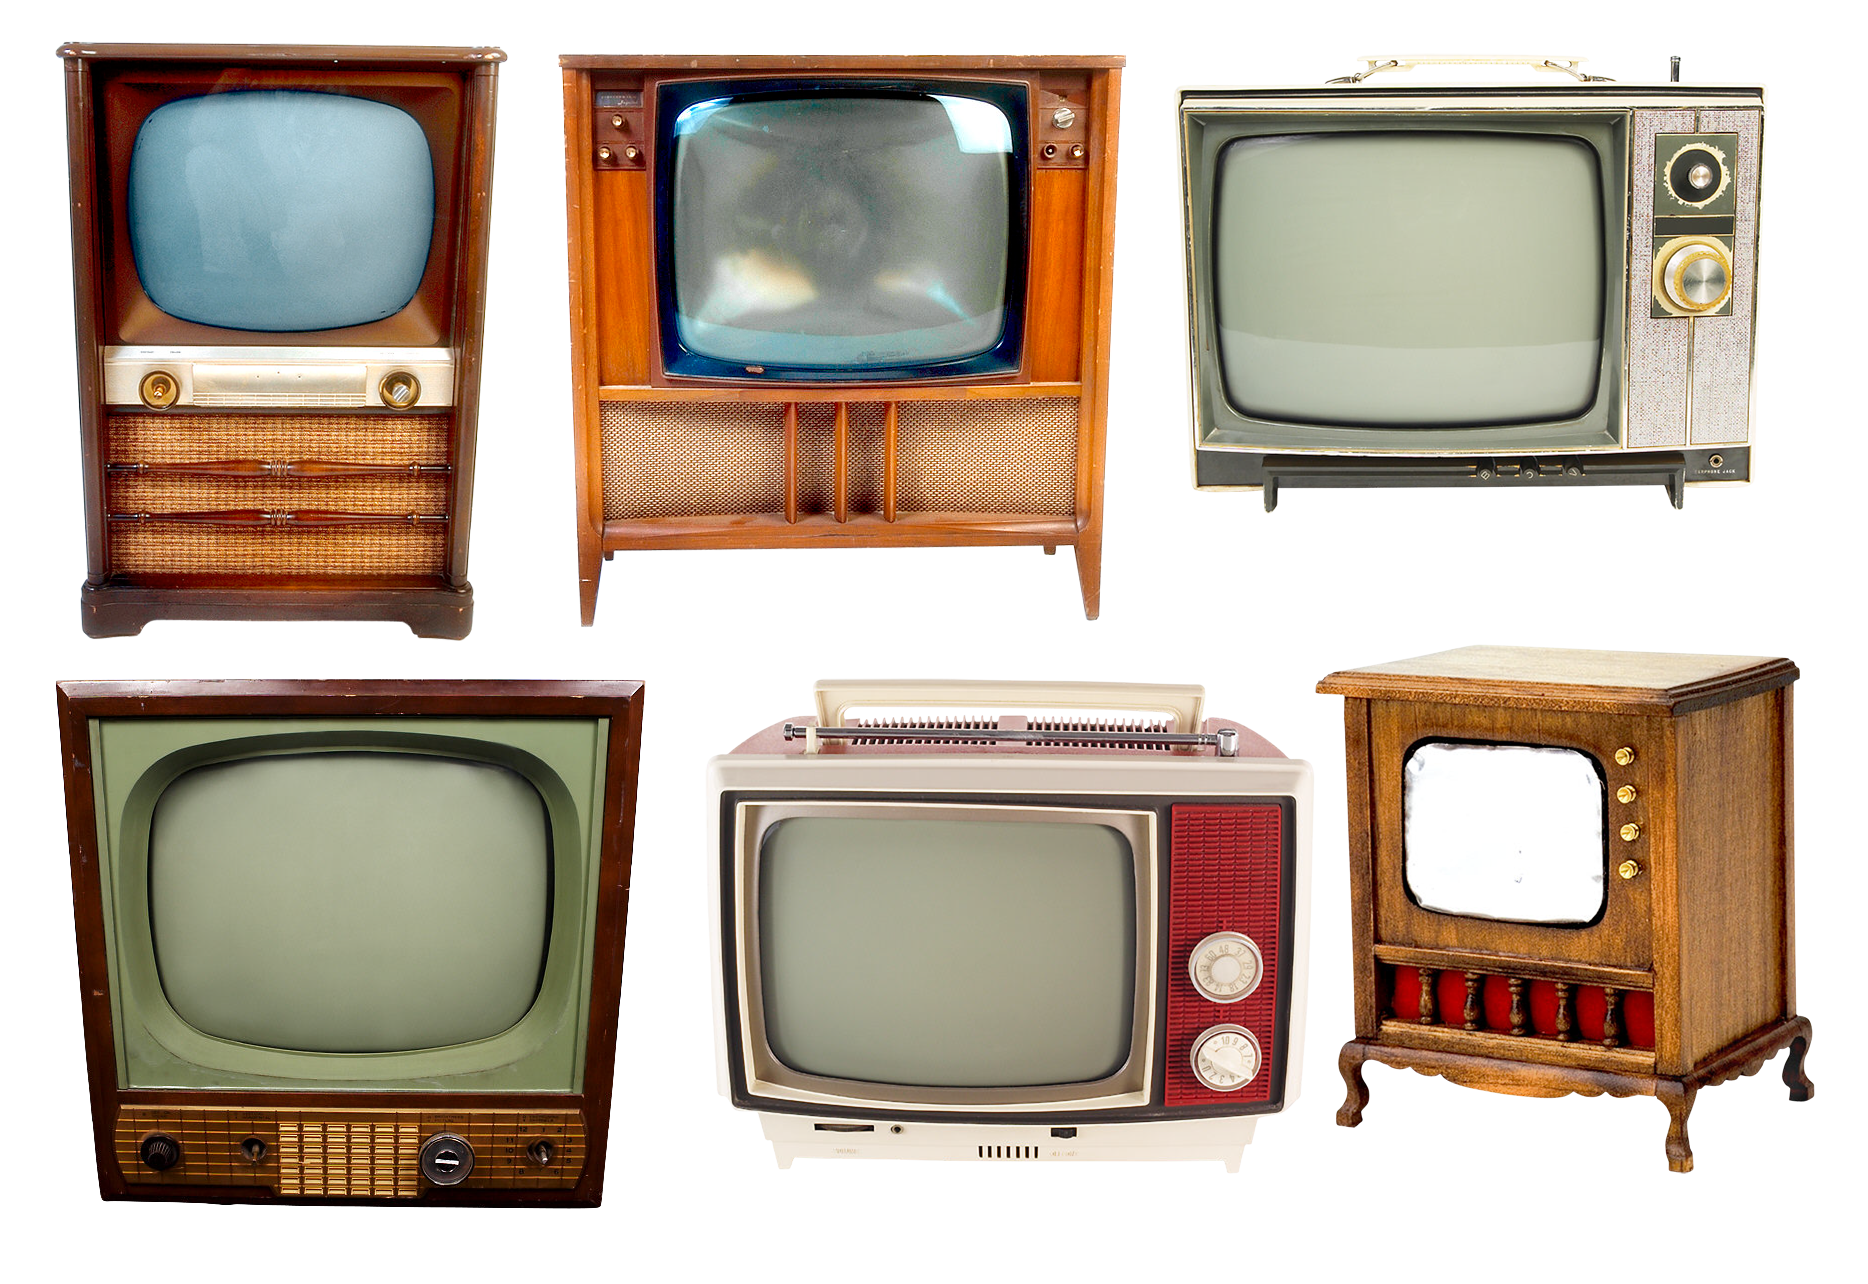 Телевизор. Старинный телевизор. Телевизор 20 века. Эволюция телевизоров.